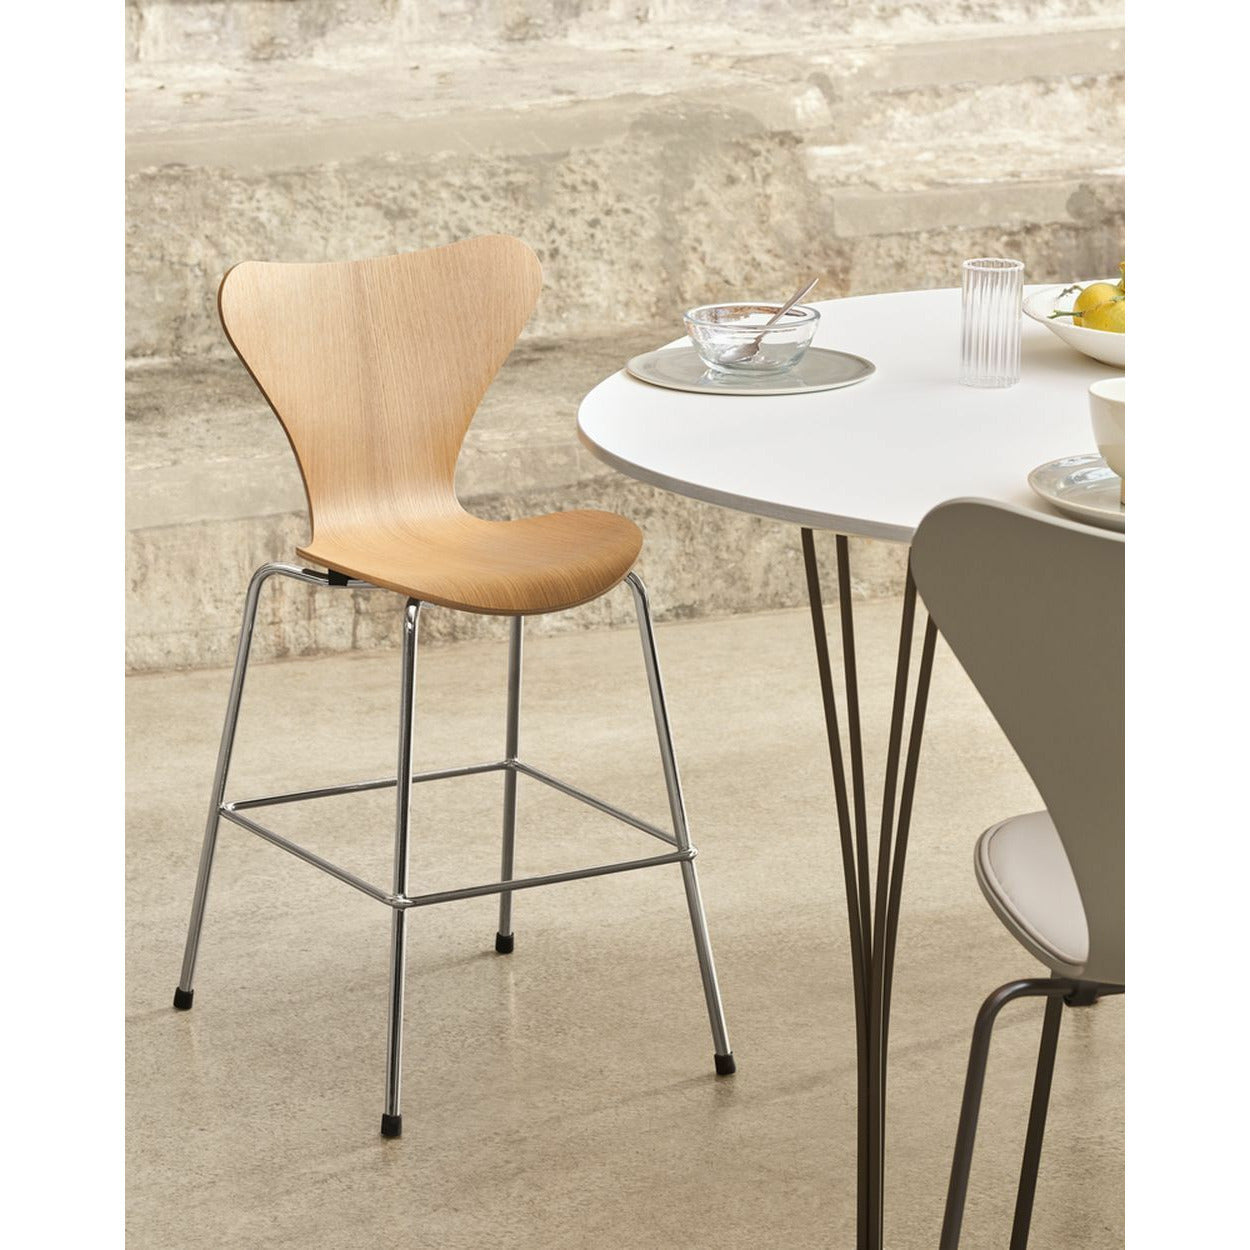 Fritz Hansen Super Ellipse Dining Table 100x150 Cm, White/Warm Graphite